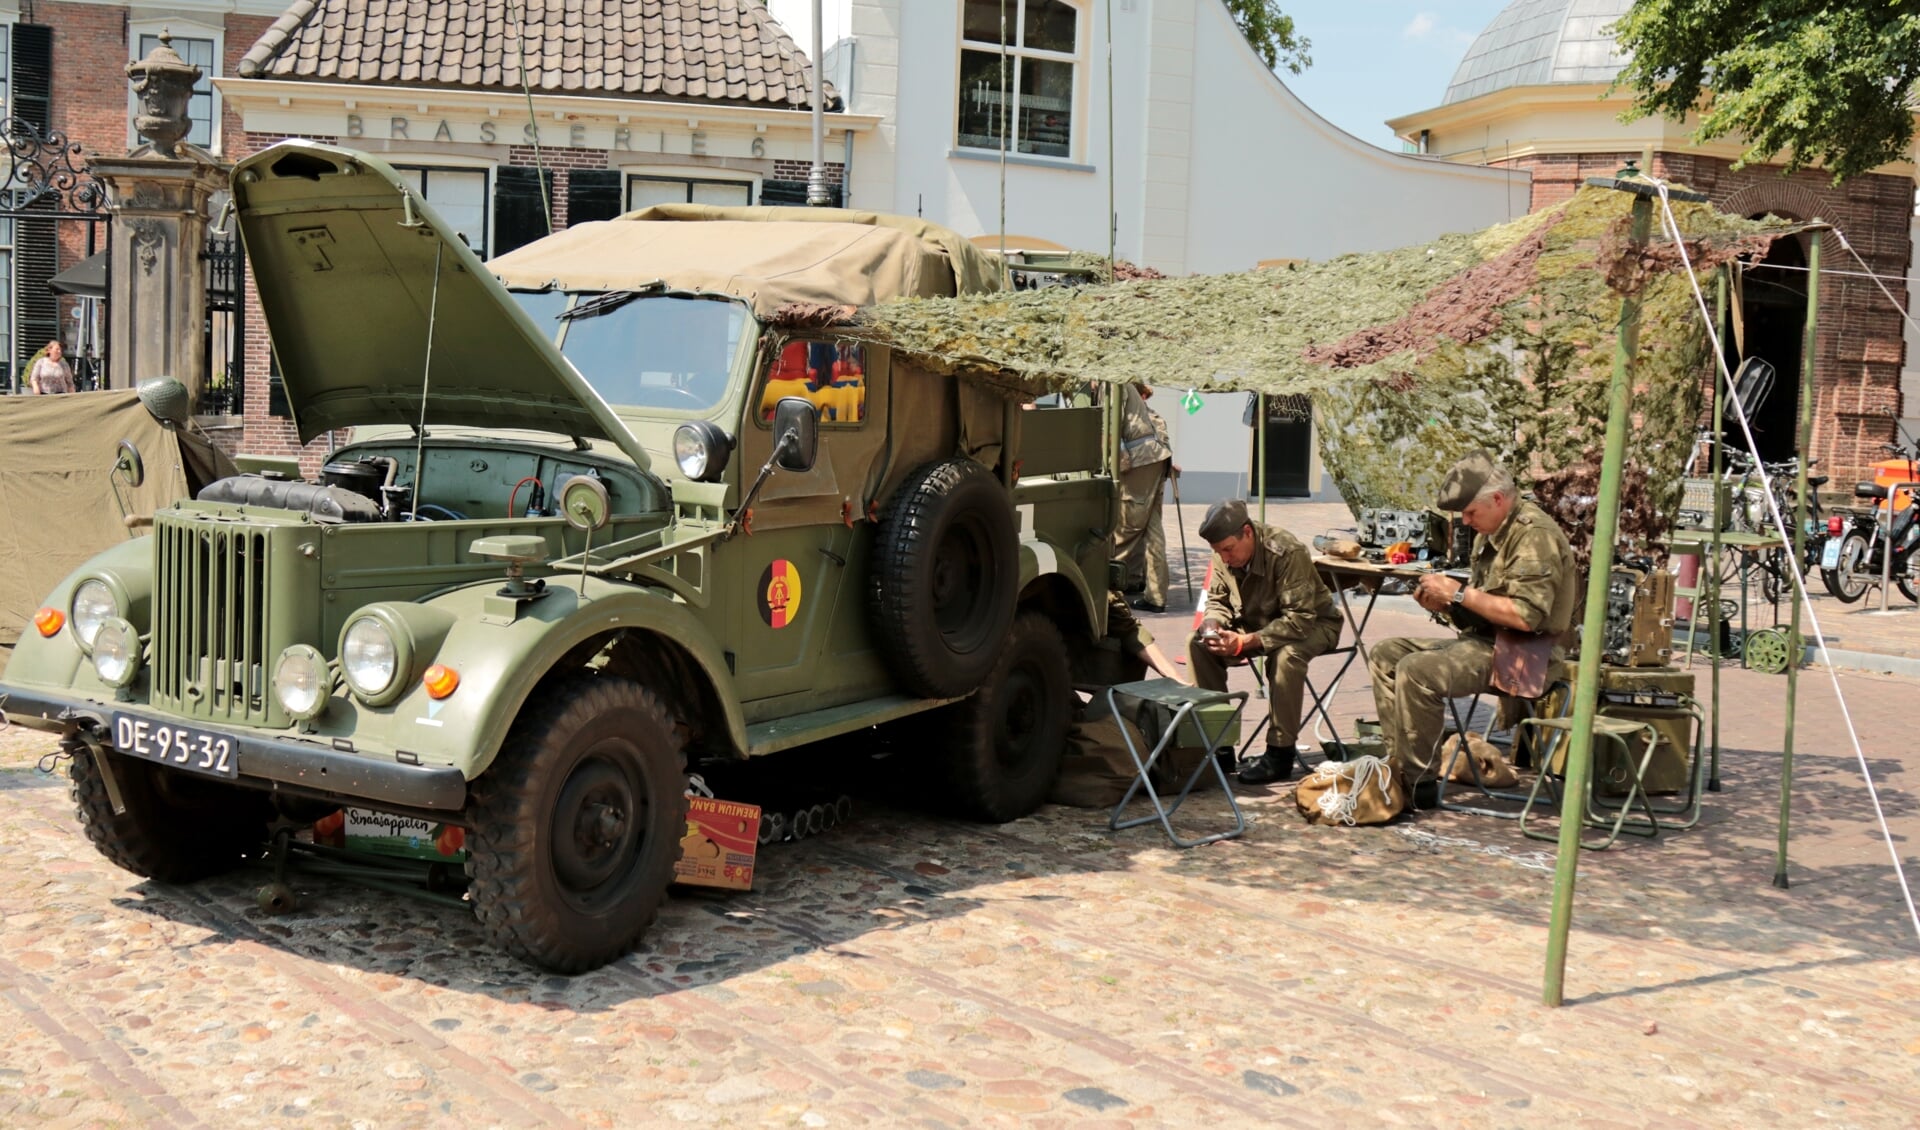 Er staan verschillende militaire voertuigen en er komt een re-enactment groep. Foto: Achterhoekfoto.nl/Marja Sangers-Bijl